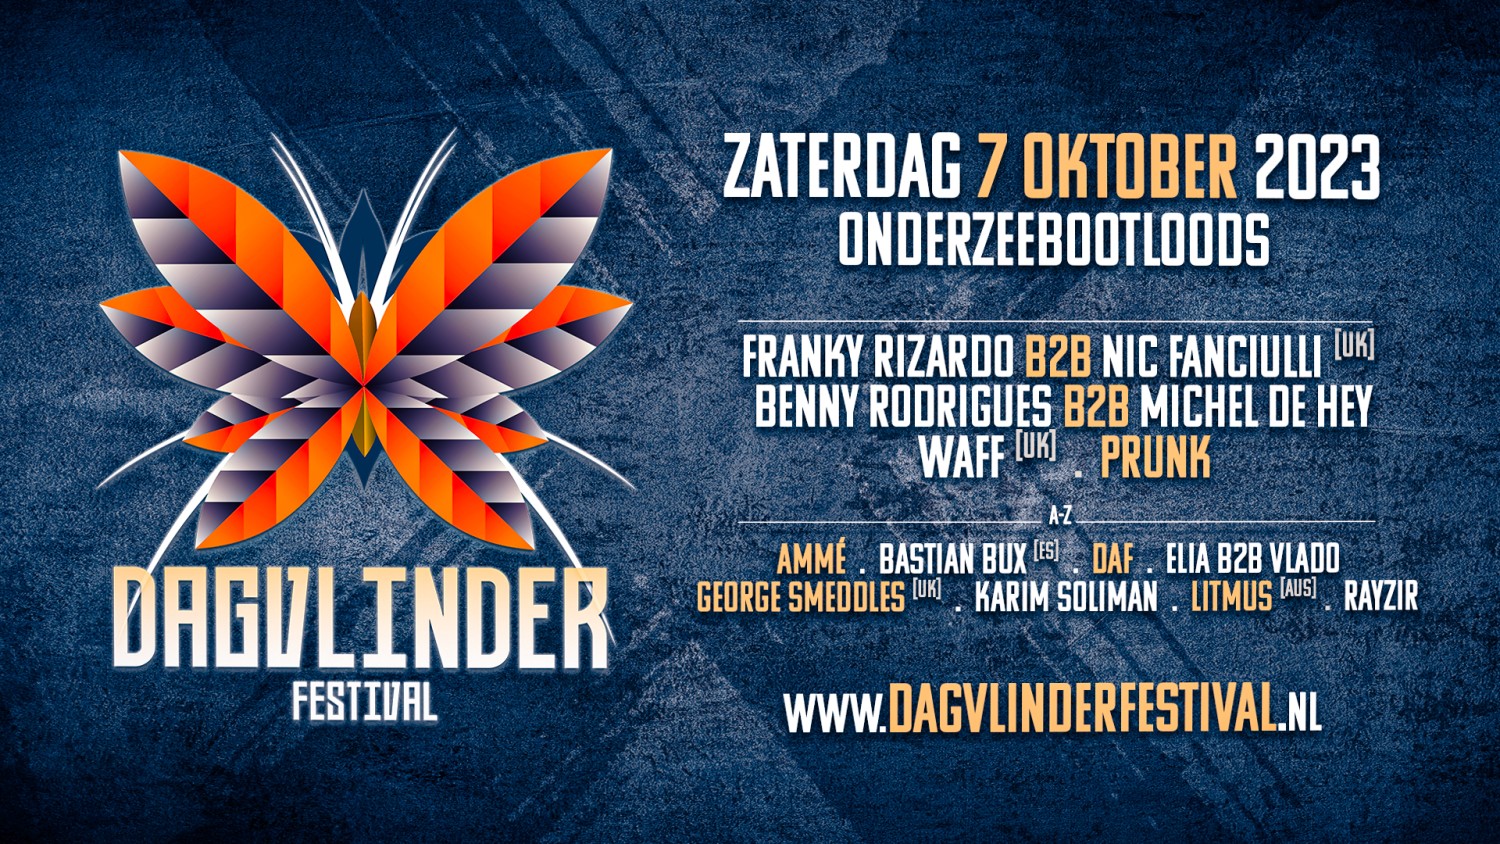 Party nieuws: Dagvlinder Festival 2023 maakt line-up bekend